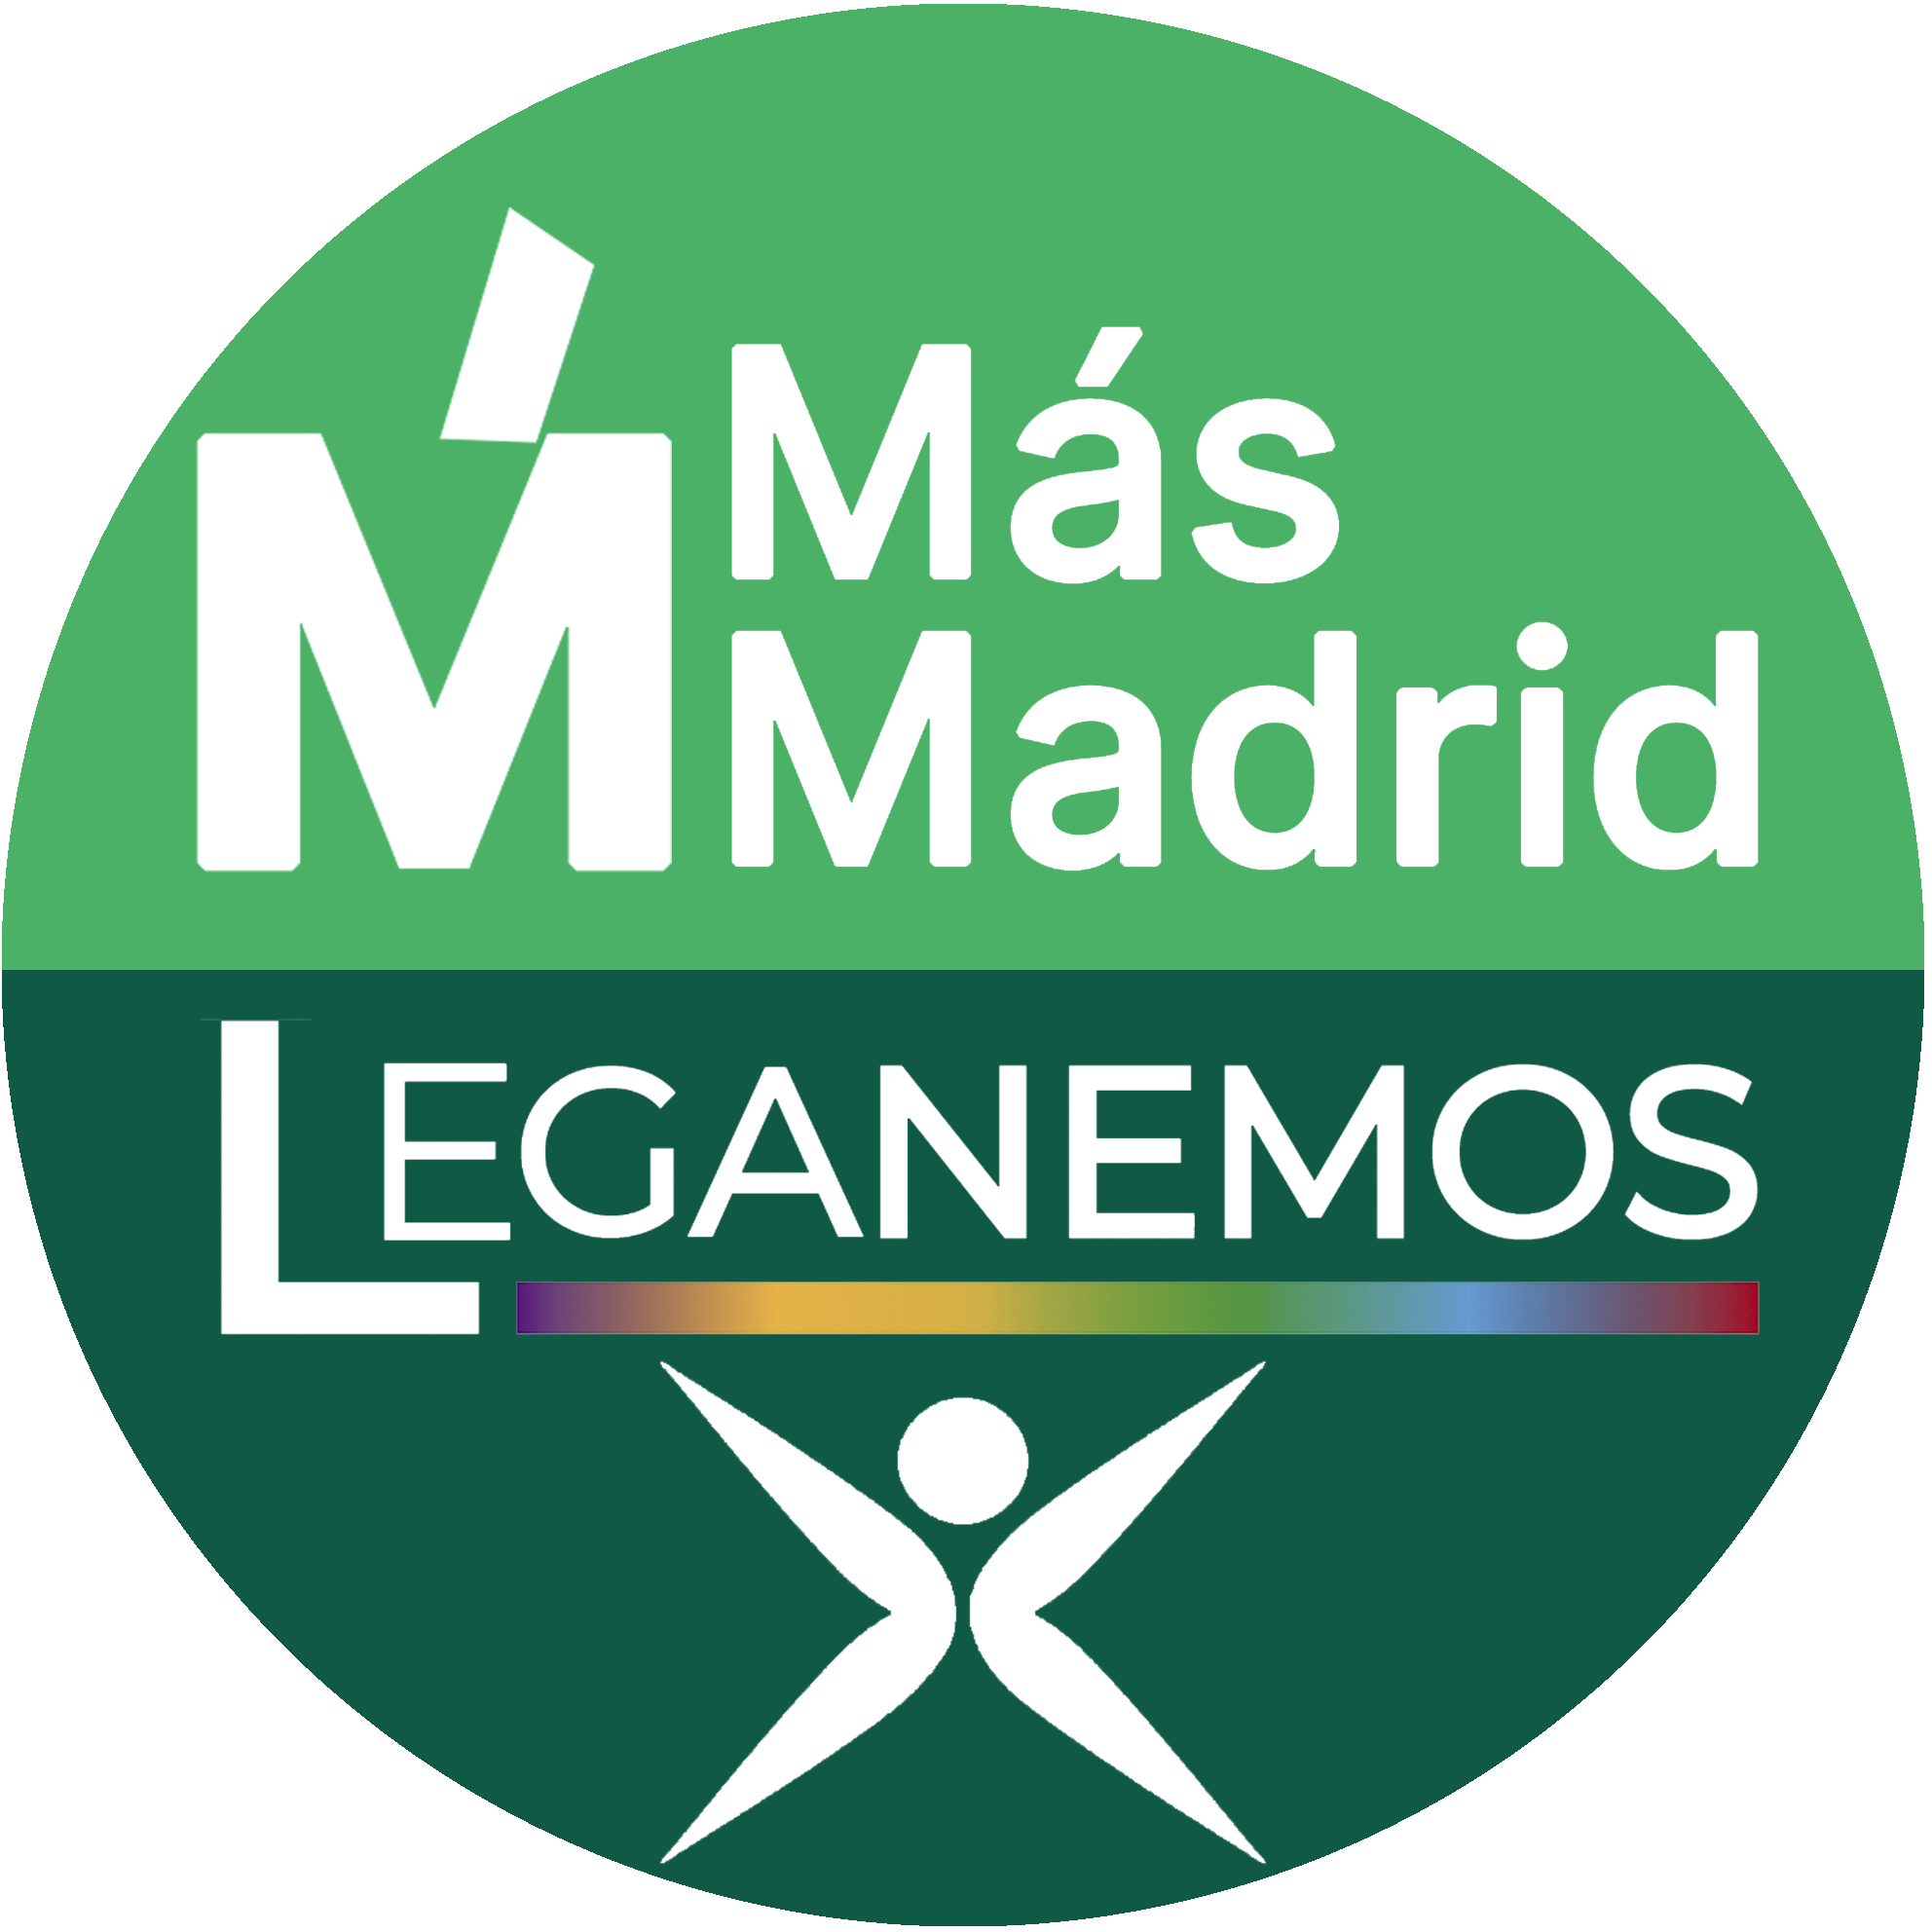 Más Madrid - Leganemos